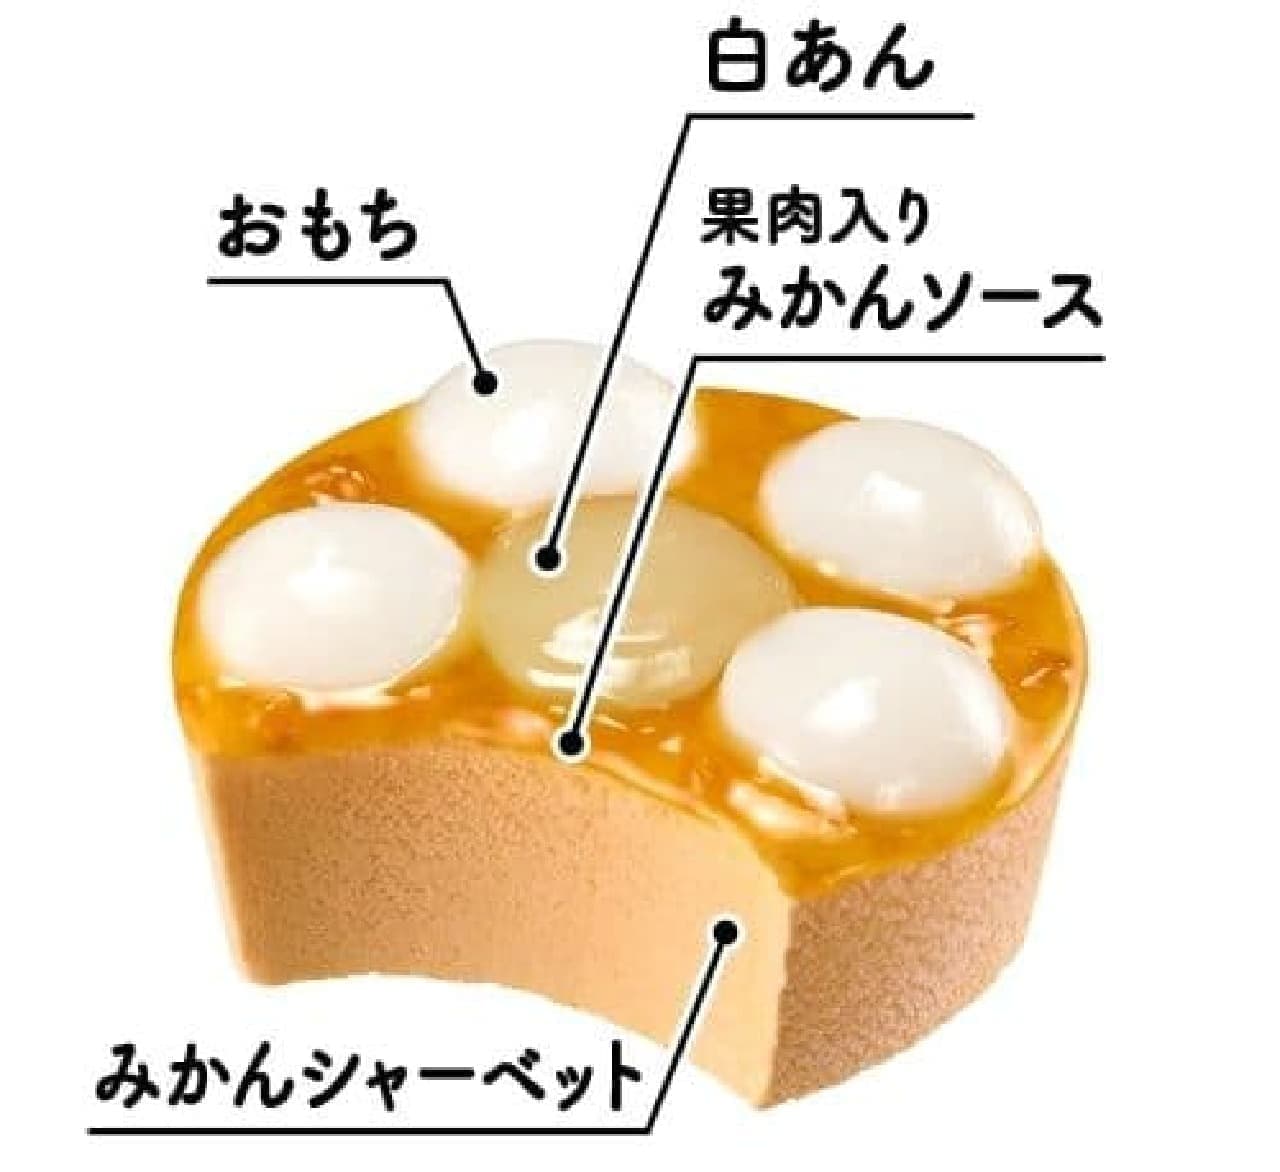 Imuraya "Yawamochi Ice Cream" "Mikan Daifuku Flavor